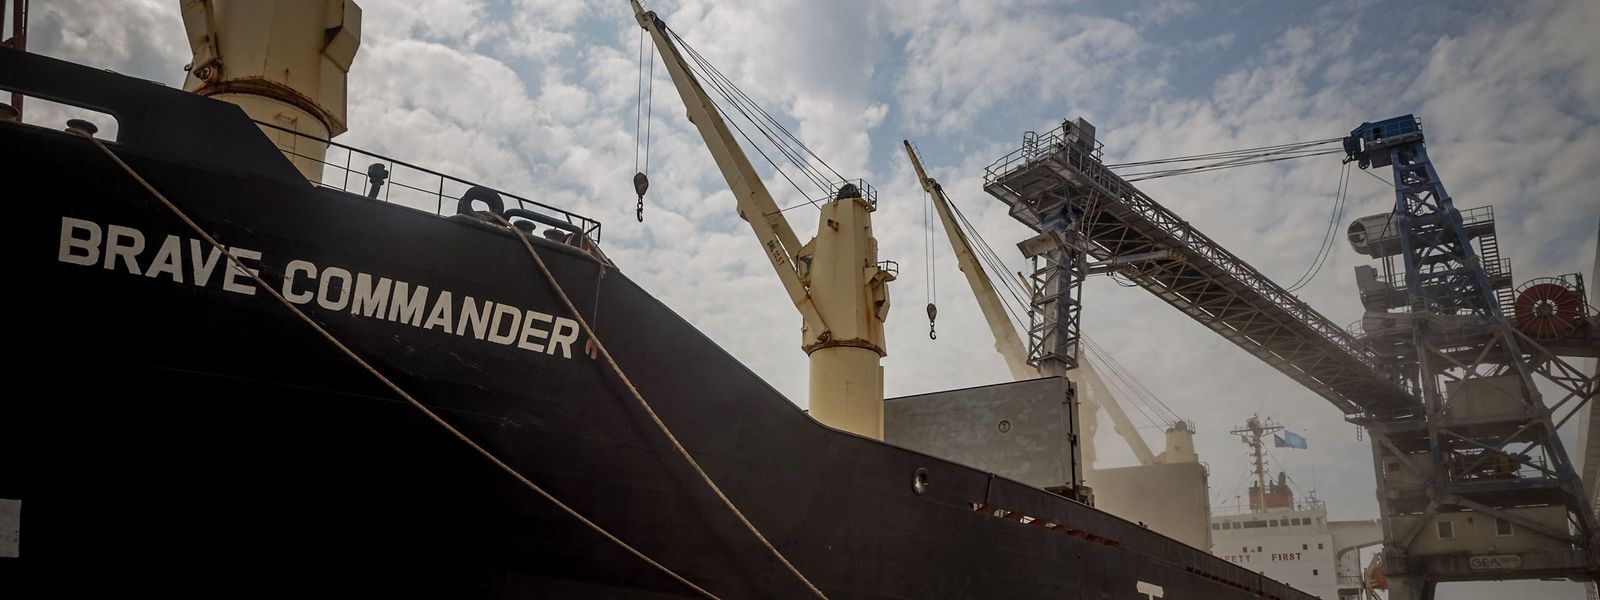 Am 14. August brachte das erste von den Vereinten Nationen gecharterte Schiff, die MV Brave Commander, mehr als 23.000 Tonnen Getreide nach Äthiopien. Doch nun ist die Ausfuhr unterbrochen.